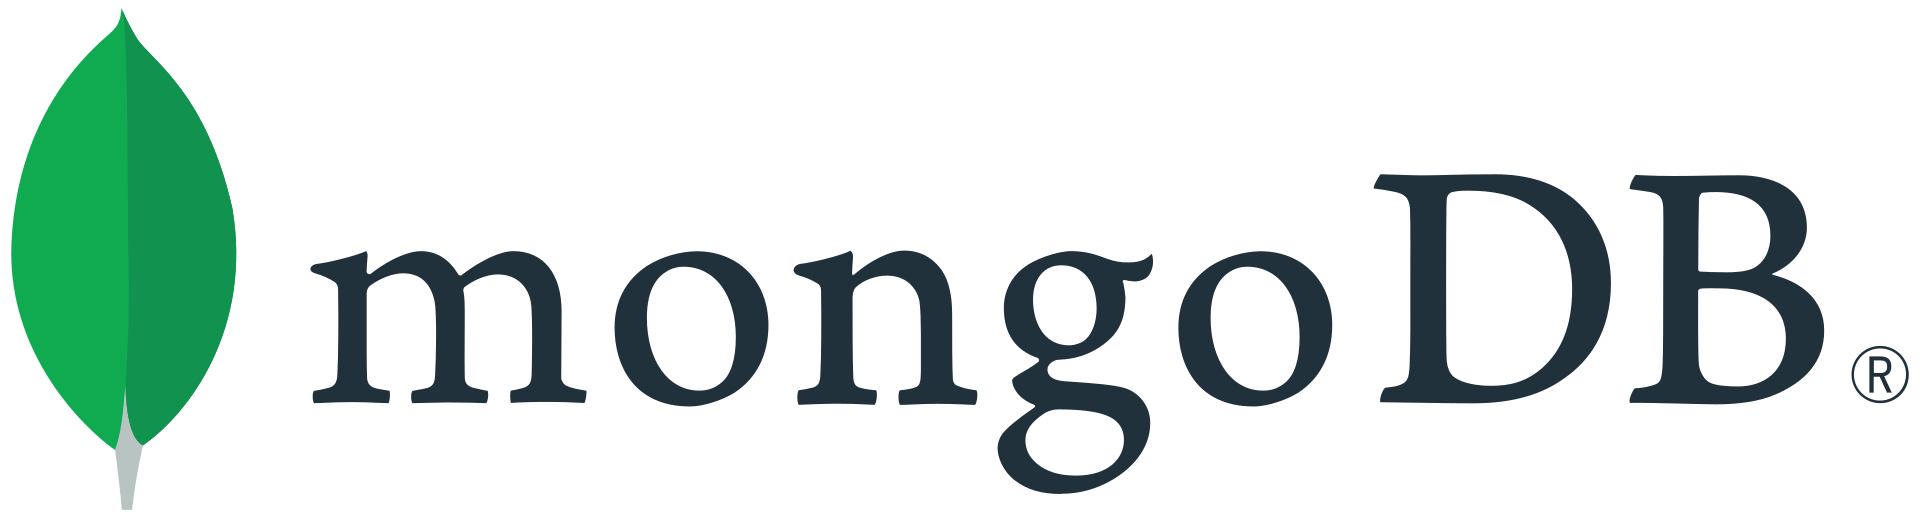 MongoDB - Документоориентированная система управления базами данных с открытым исходным кодом